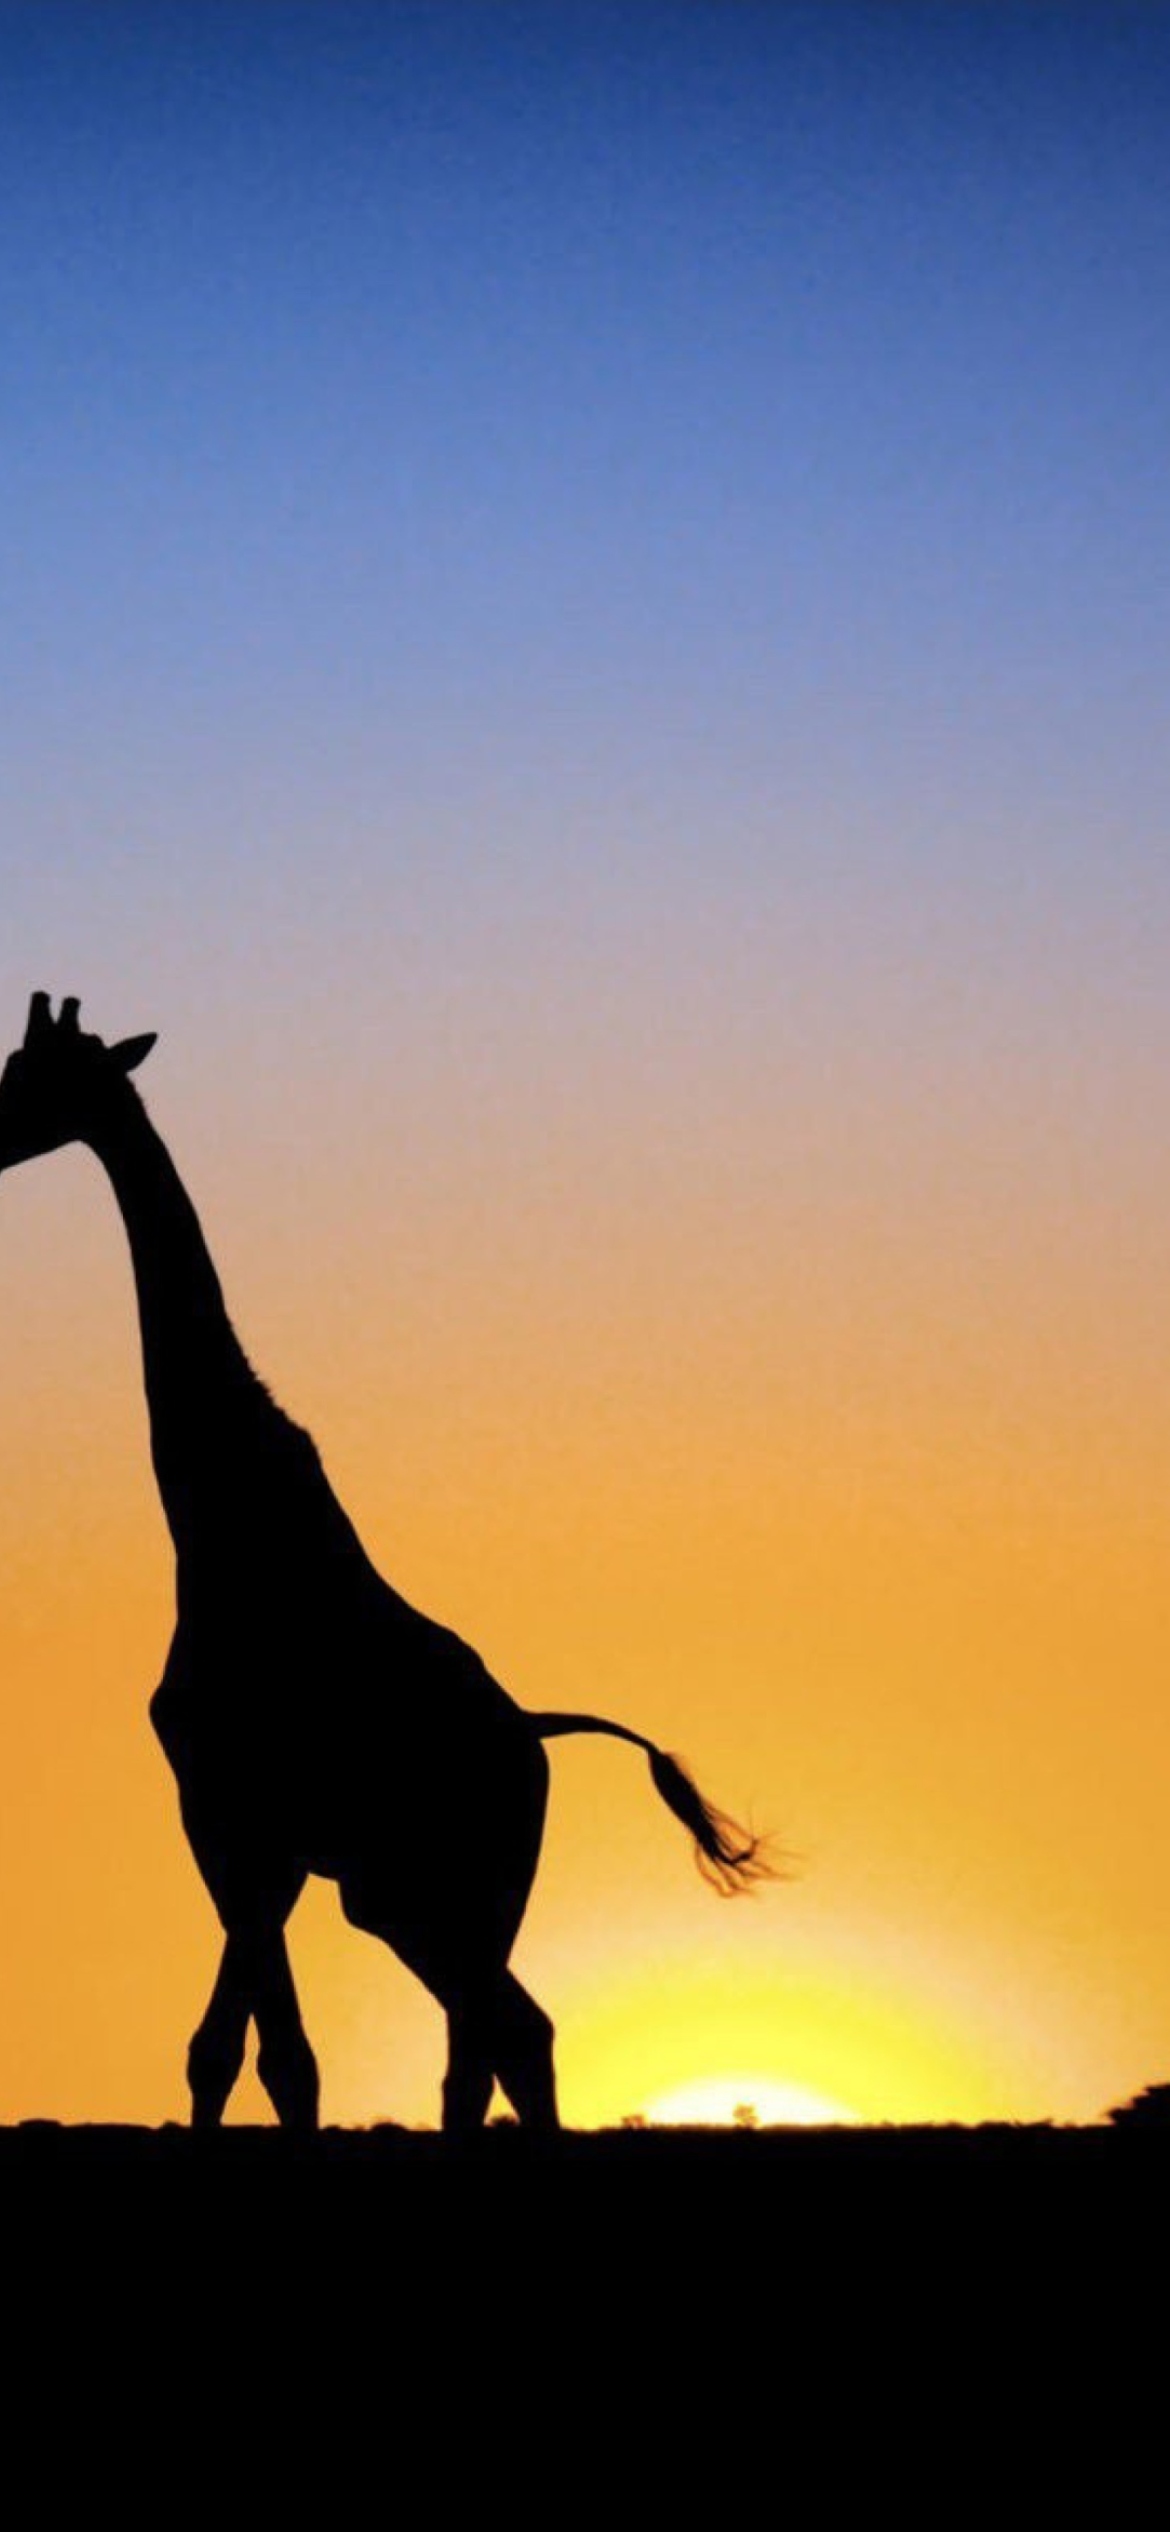 Safari At Sunset - Giraffe's Silhouette screenshot #1 1170x2532